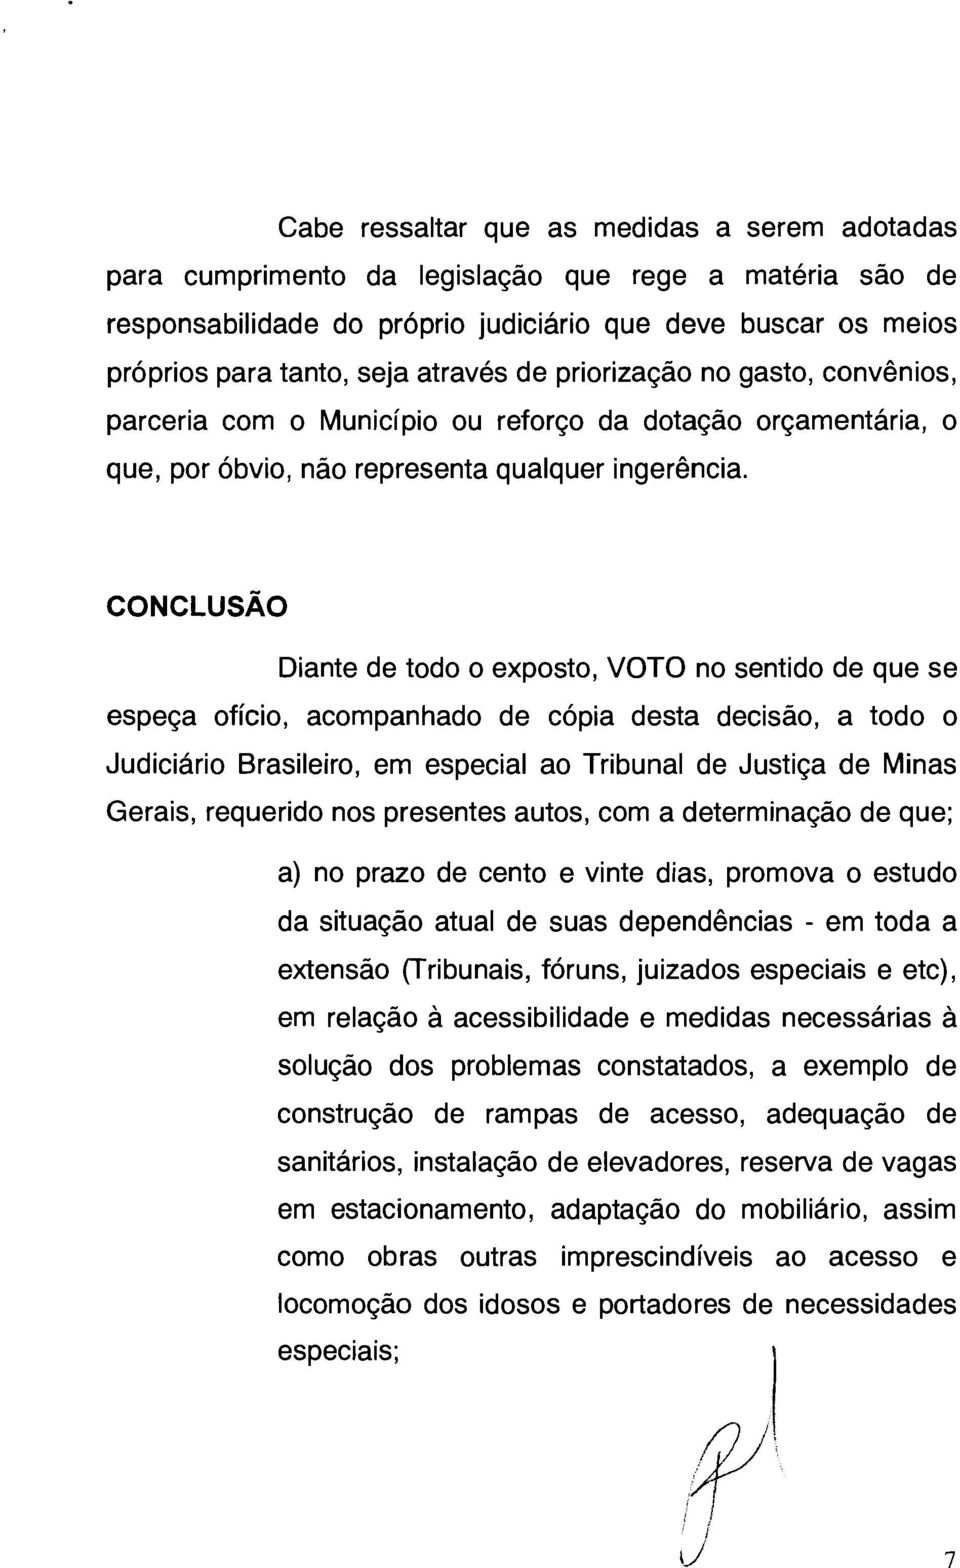 Diante de todo o exposto, VOTO no sentido de que se espeça ofício, acompanhado de cópia desta decisão, a todo o Judiciário Brasileiro, em especial ao Tribunal de Justiça de Minas Gerais, requerido